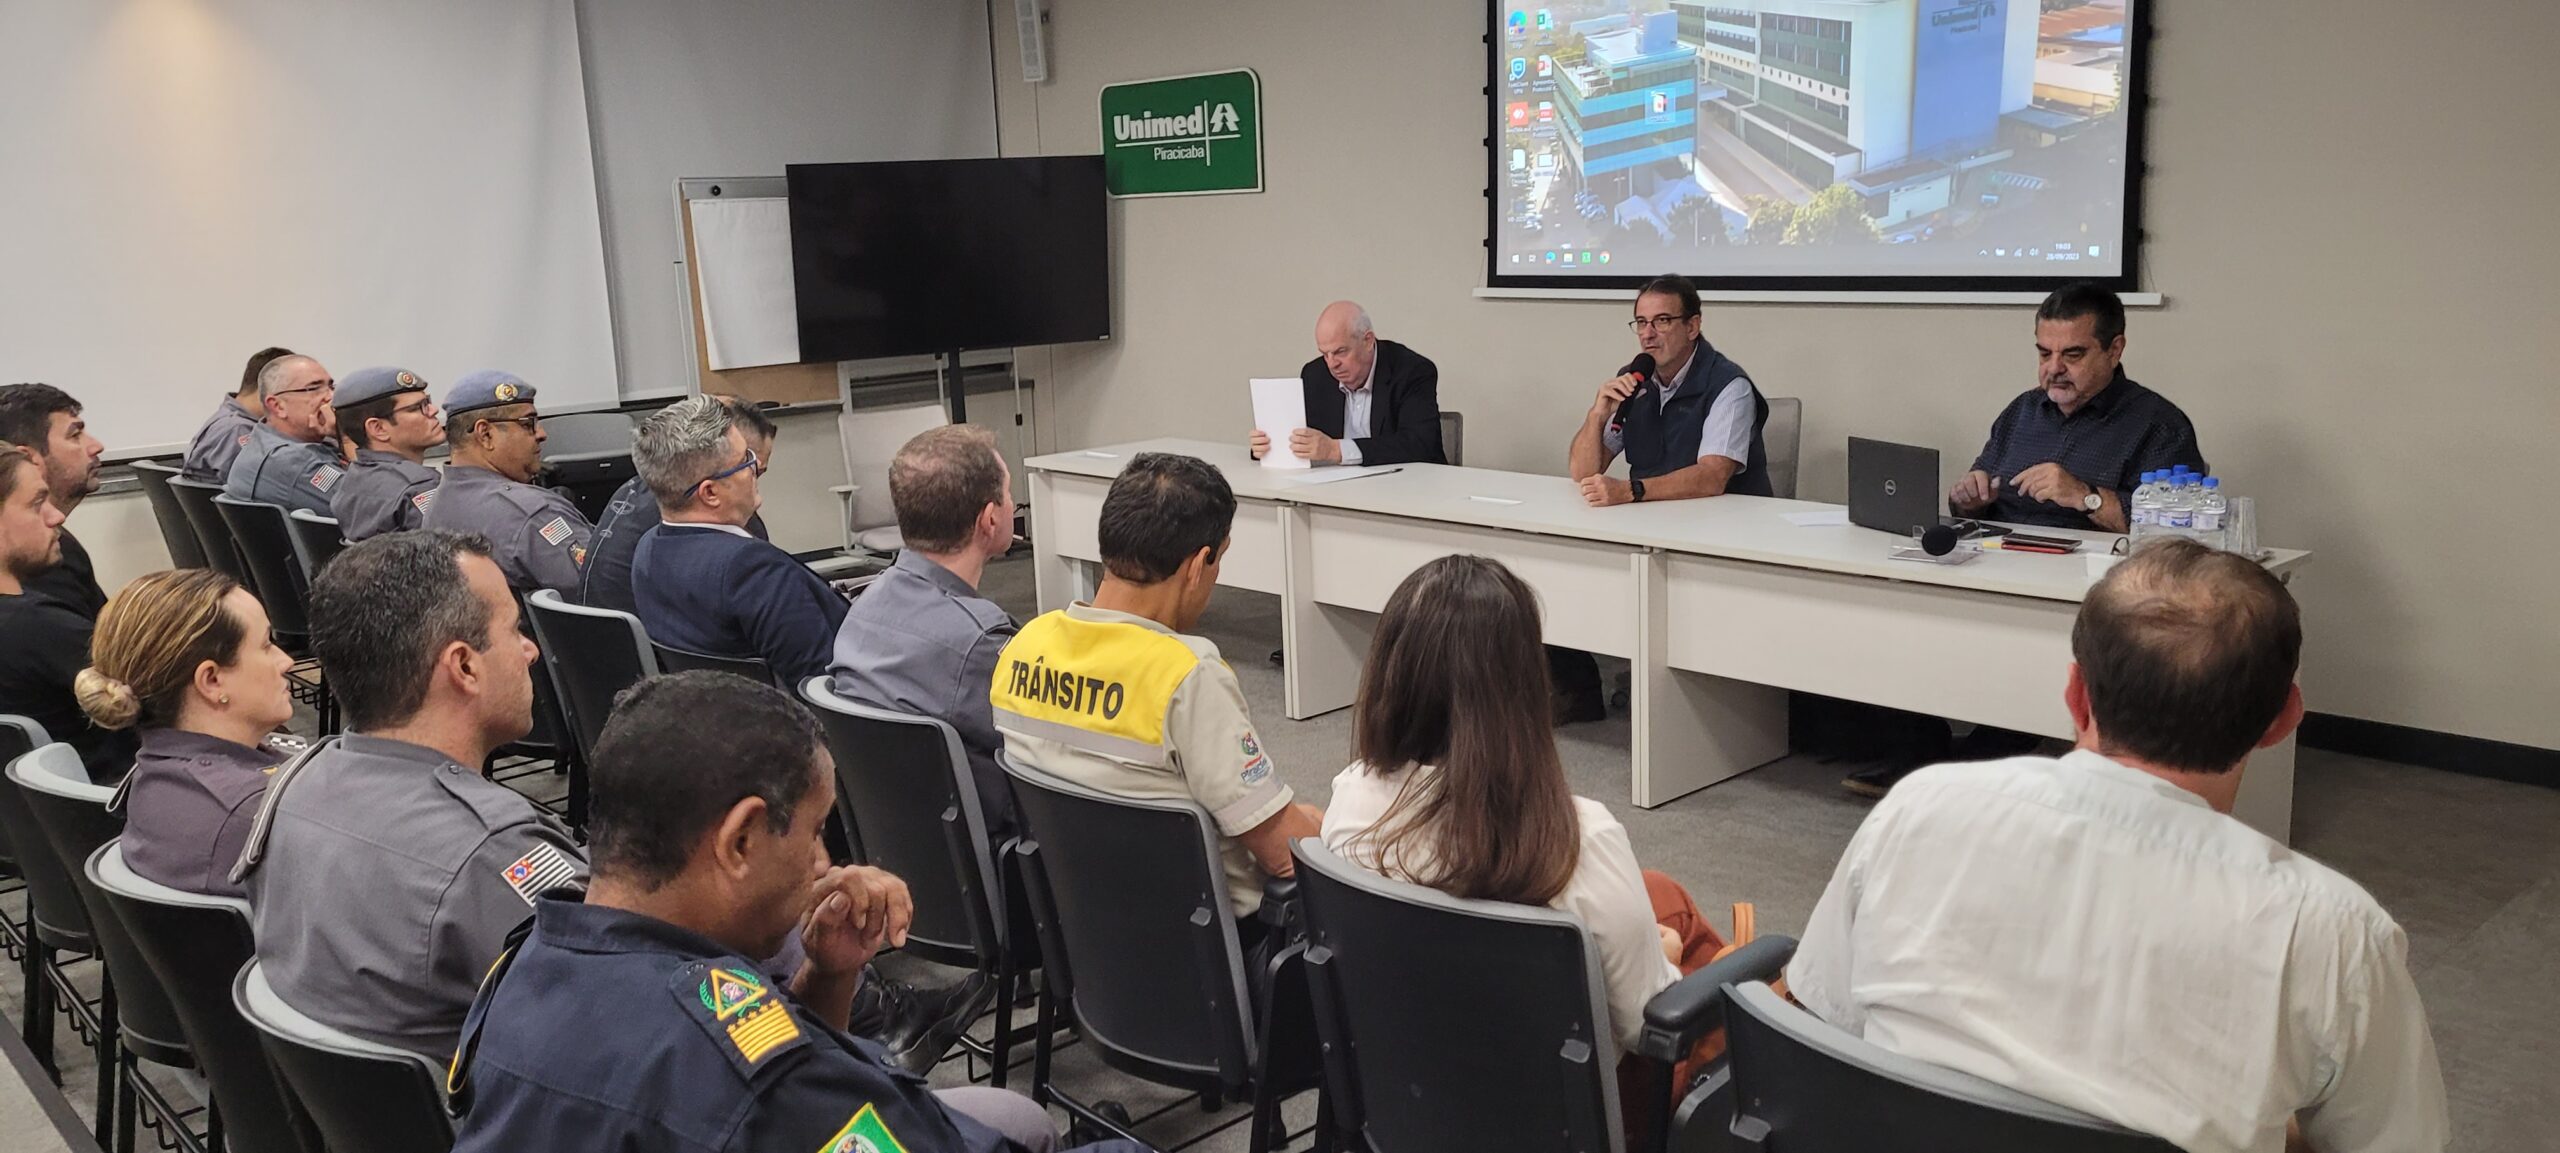 Na reunião do Comuse o prefeito Luciano Almeida ressaltou a importância da integração das forças de segurança da cidade para uma melhor qualidade de vida na cidade